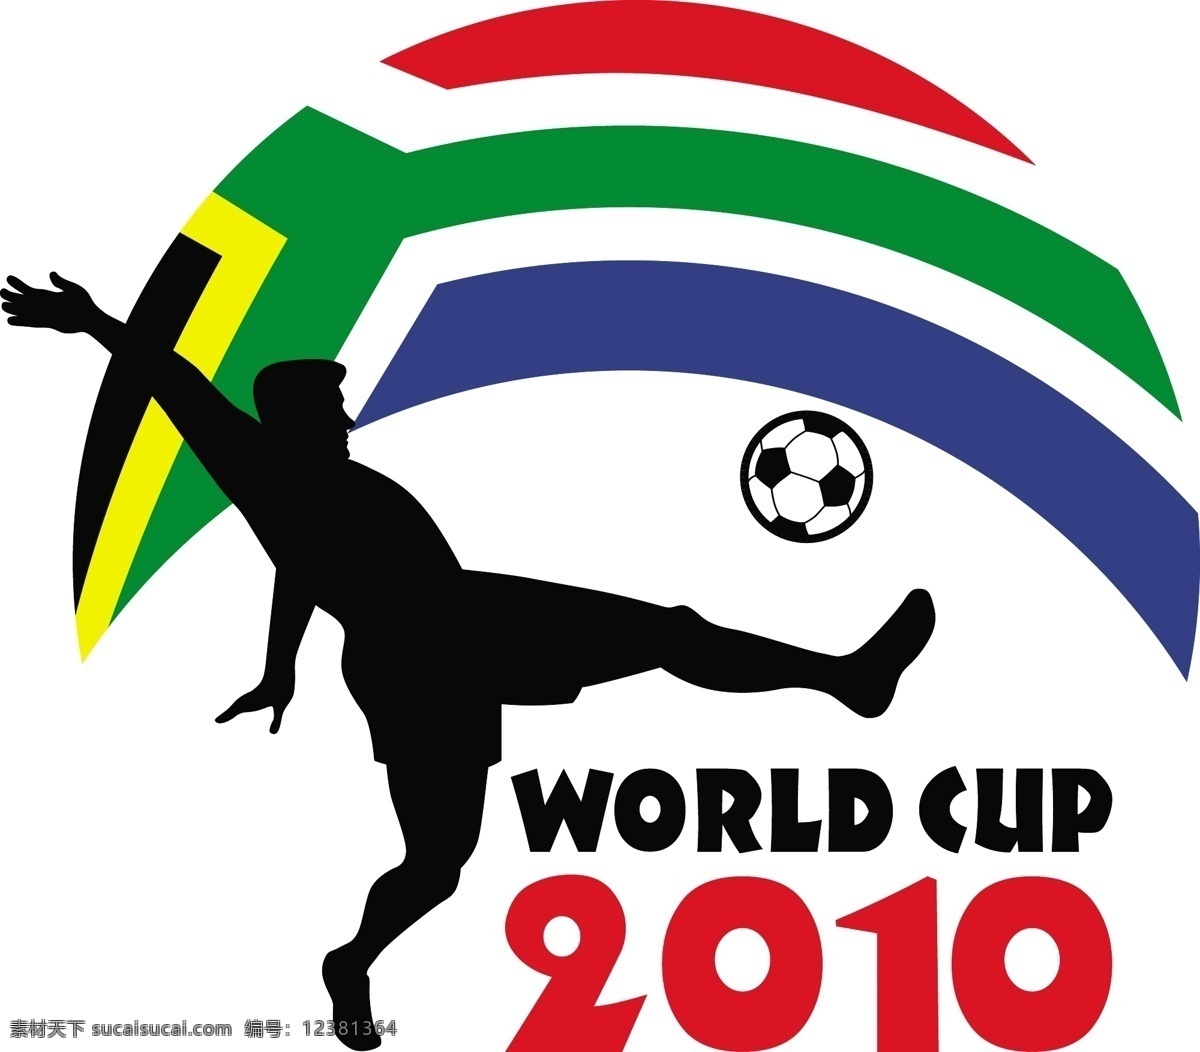 2010 南非 世界杯 足球赛 矢量图 日常生活